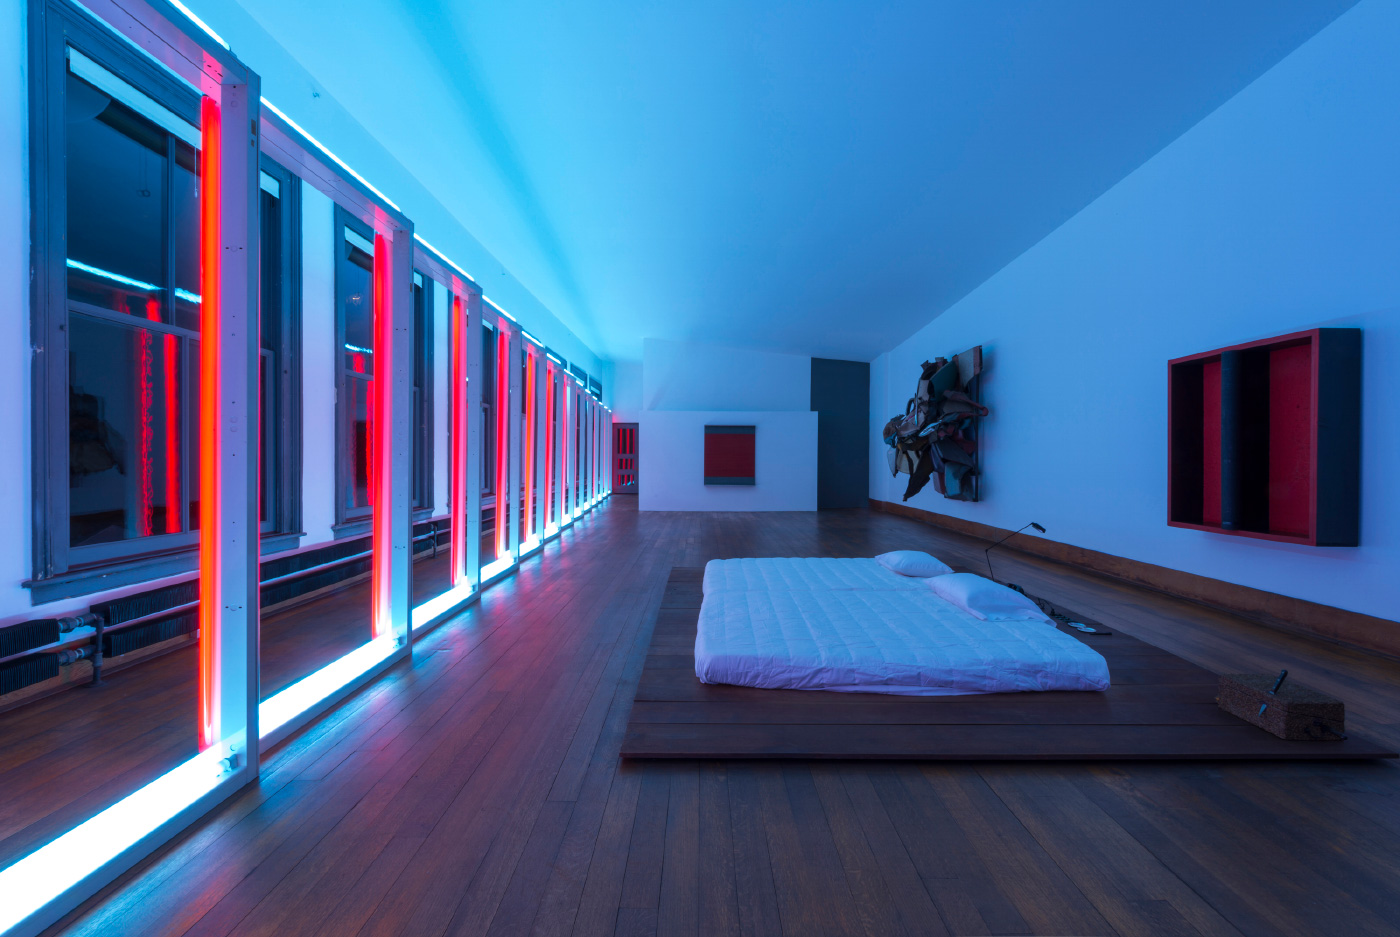 唐纳德·贾德基金会(Donald Judd Foundation)位于纽约的住宅内部，有一间蓝色和粉色灯光的卧室